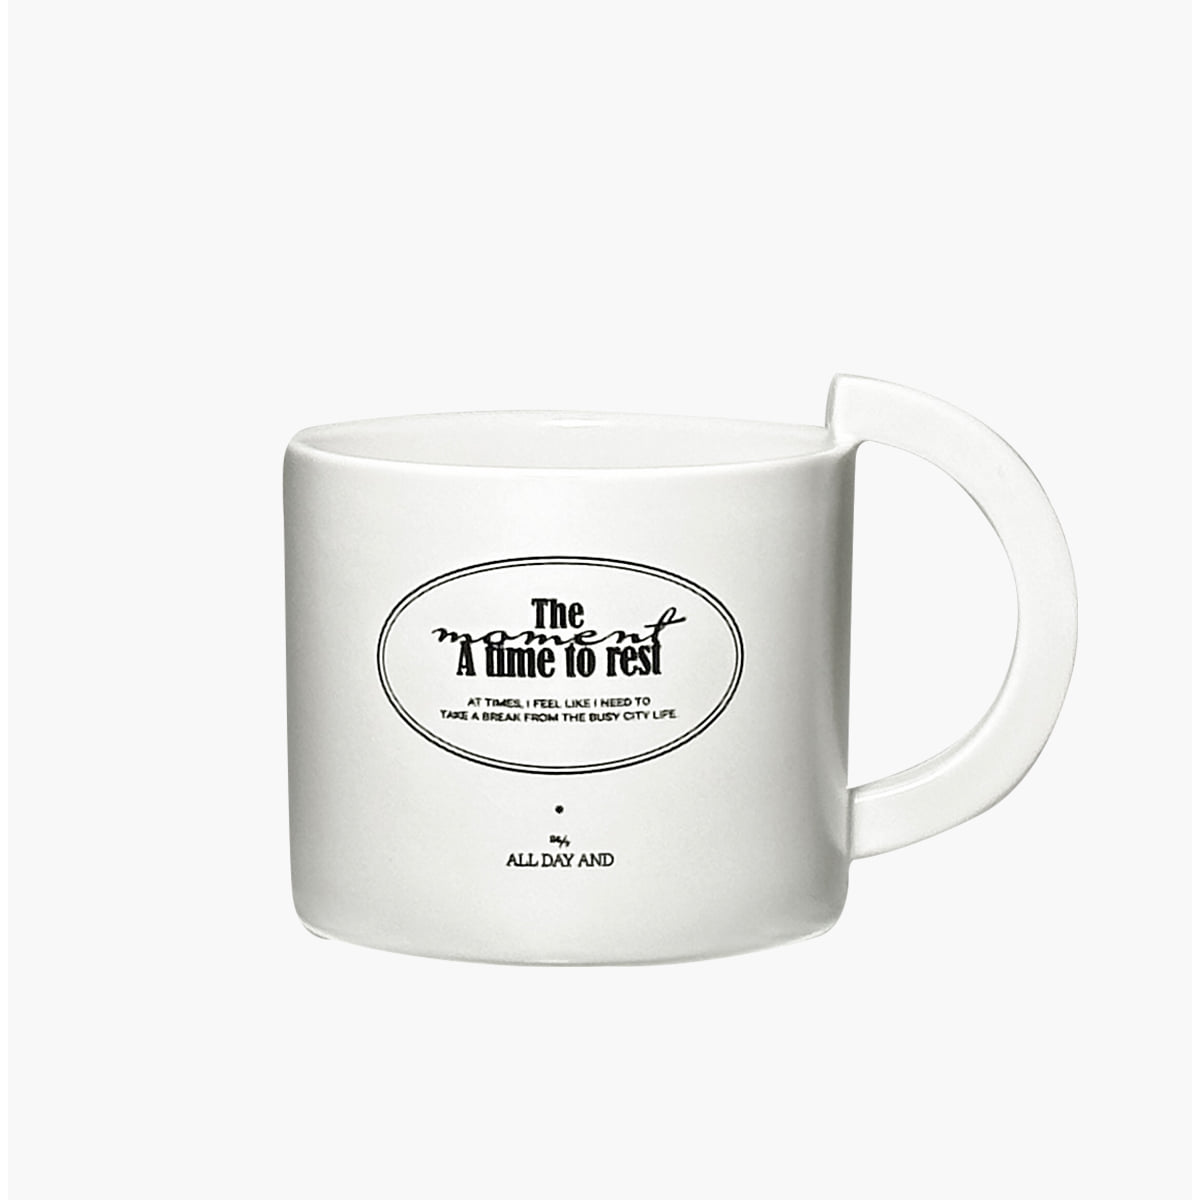 타임 머그컵 Time mug cup